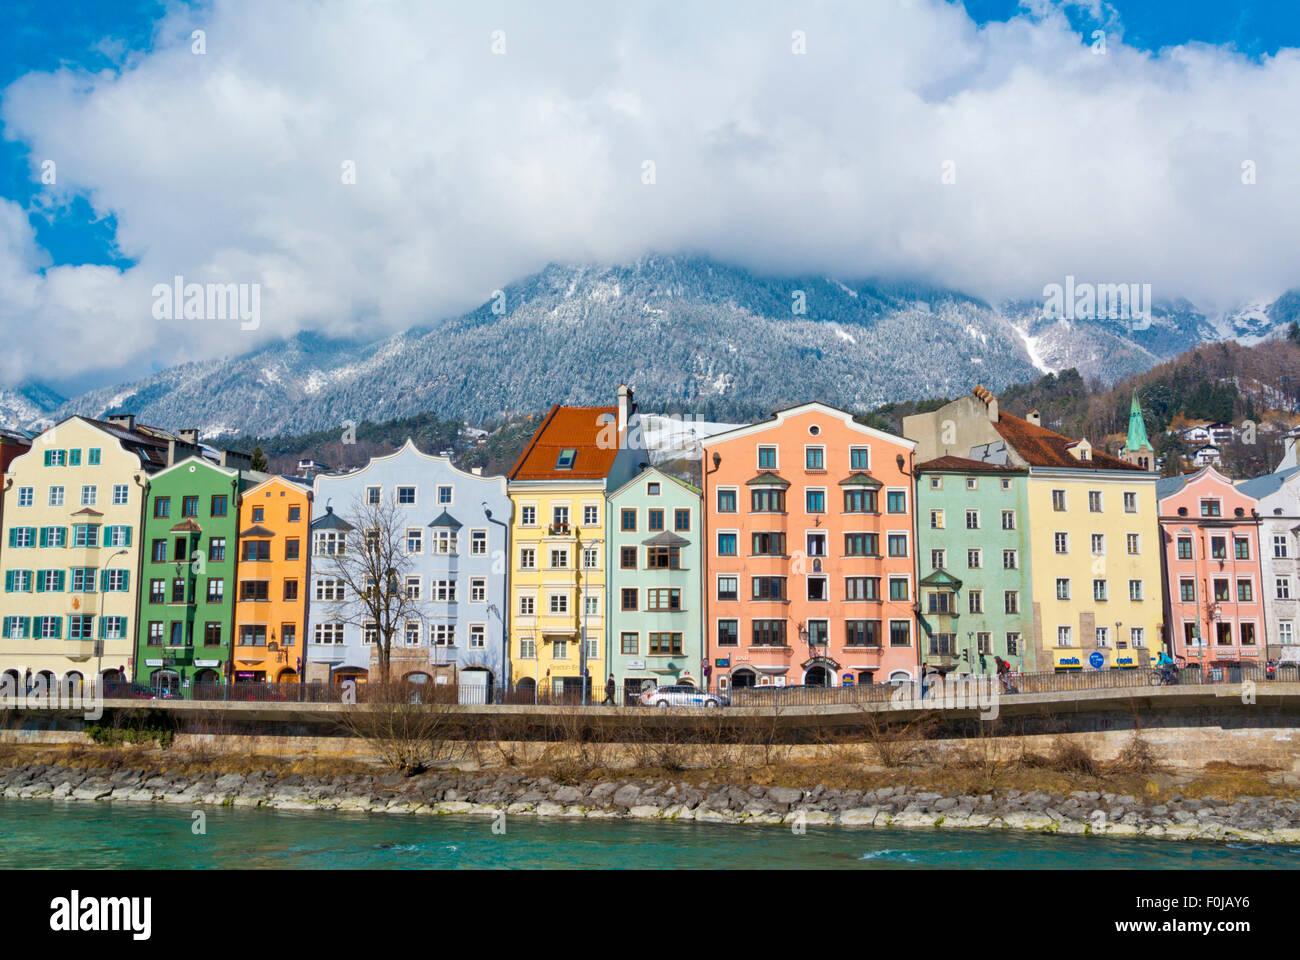 Residential houses, Inn riverside, Mariahilf district, Innsbruck, Inn Valley, Tyrol, Austria Stock Photo